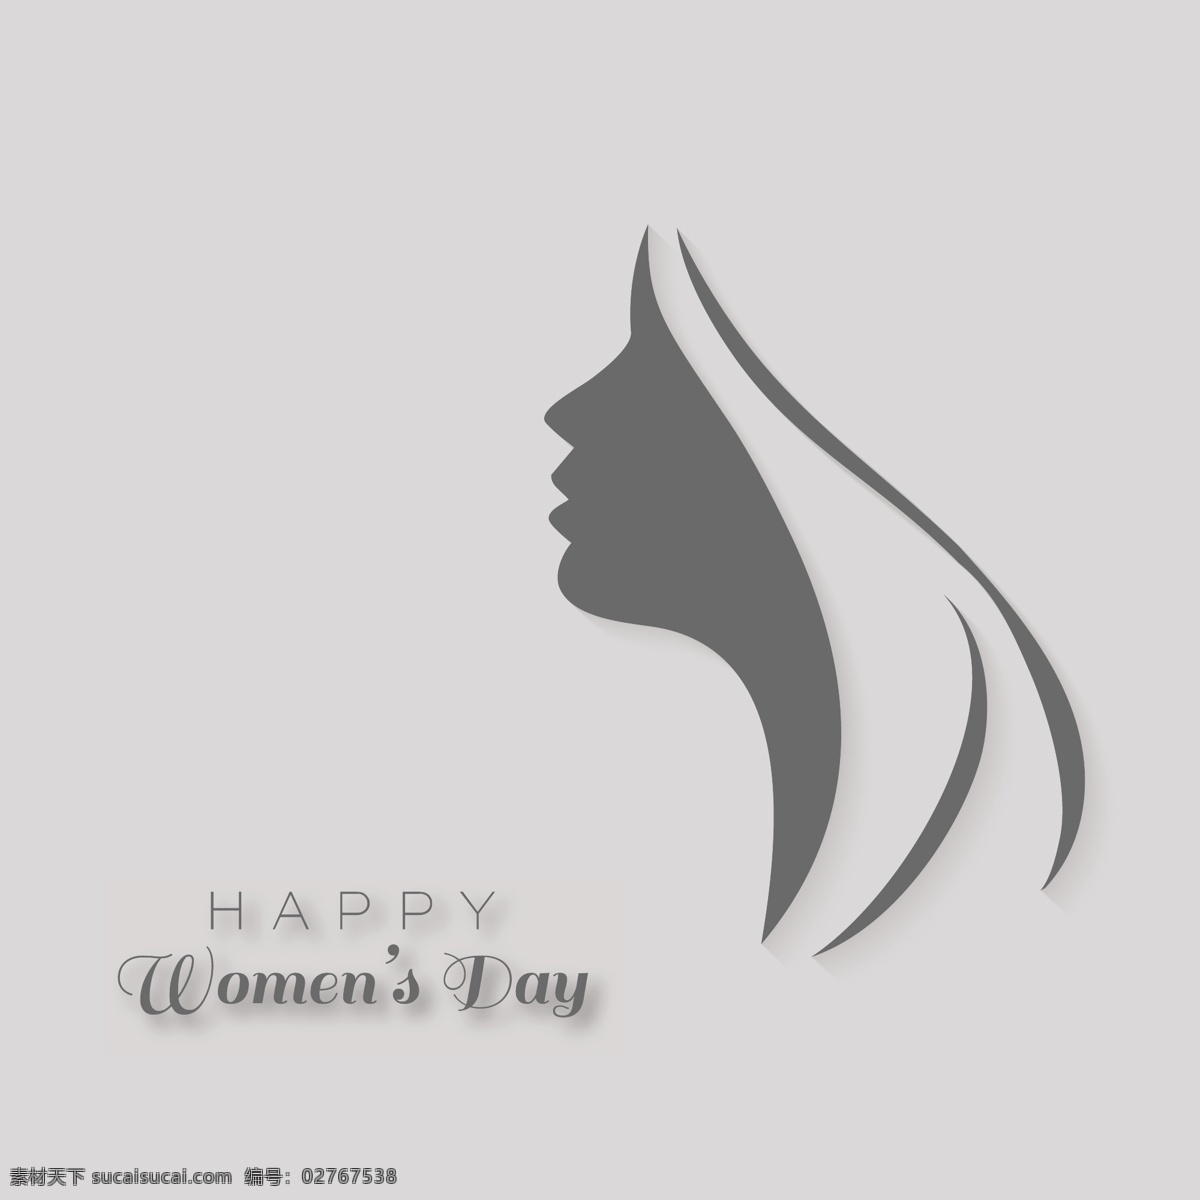 国际妇女节 灰色背景 背景 庆祝 假日 女士 女性 自由 国际 游行 妇女 平等